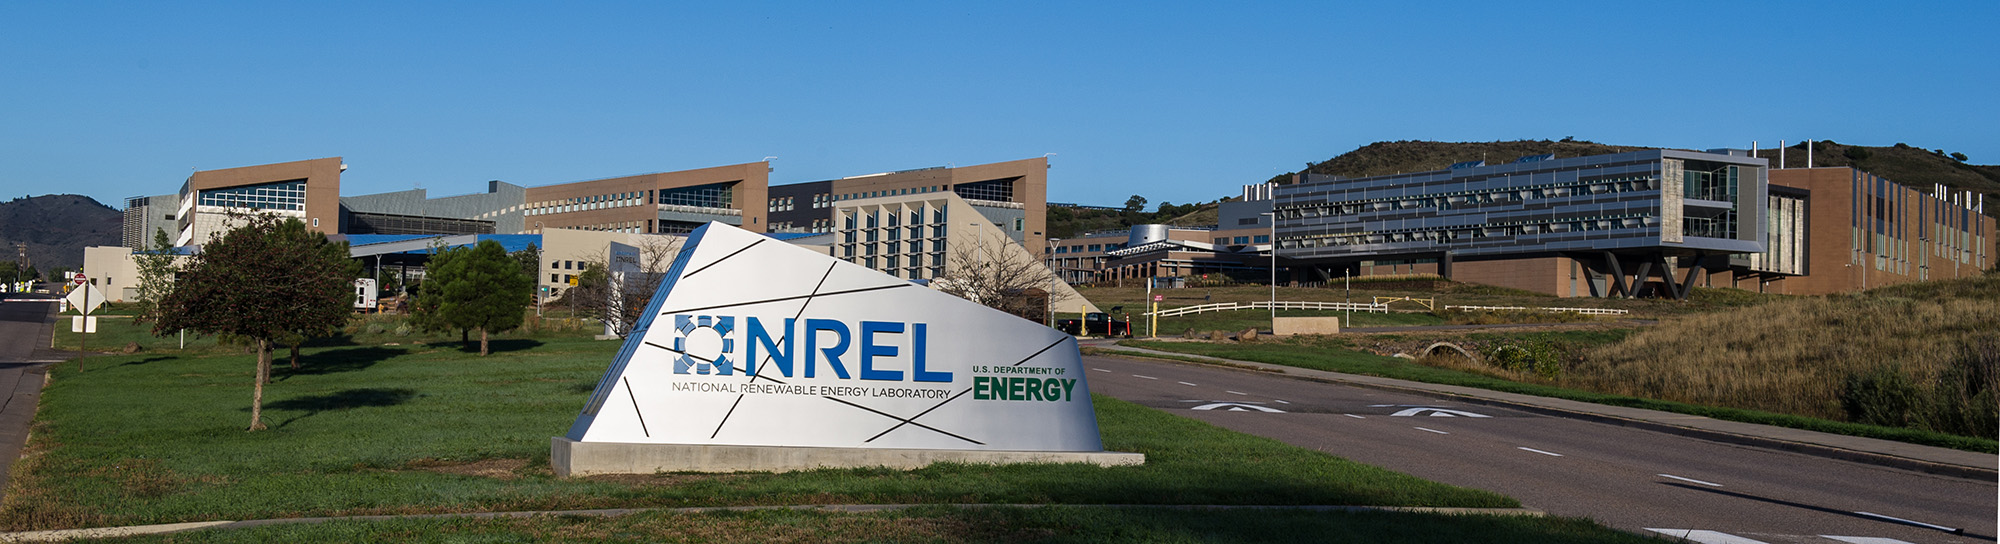 October 3, 2013 - Front entrance sign at NREL's STM campus. (Photo by Dennis Schroeder / NREL)